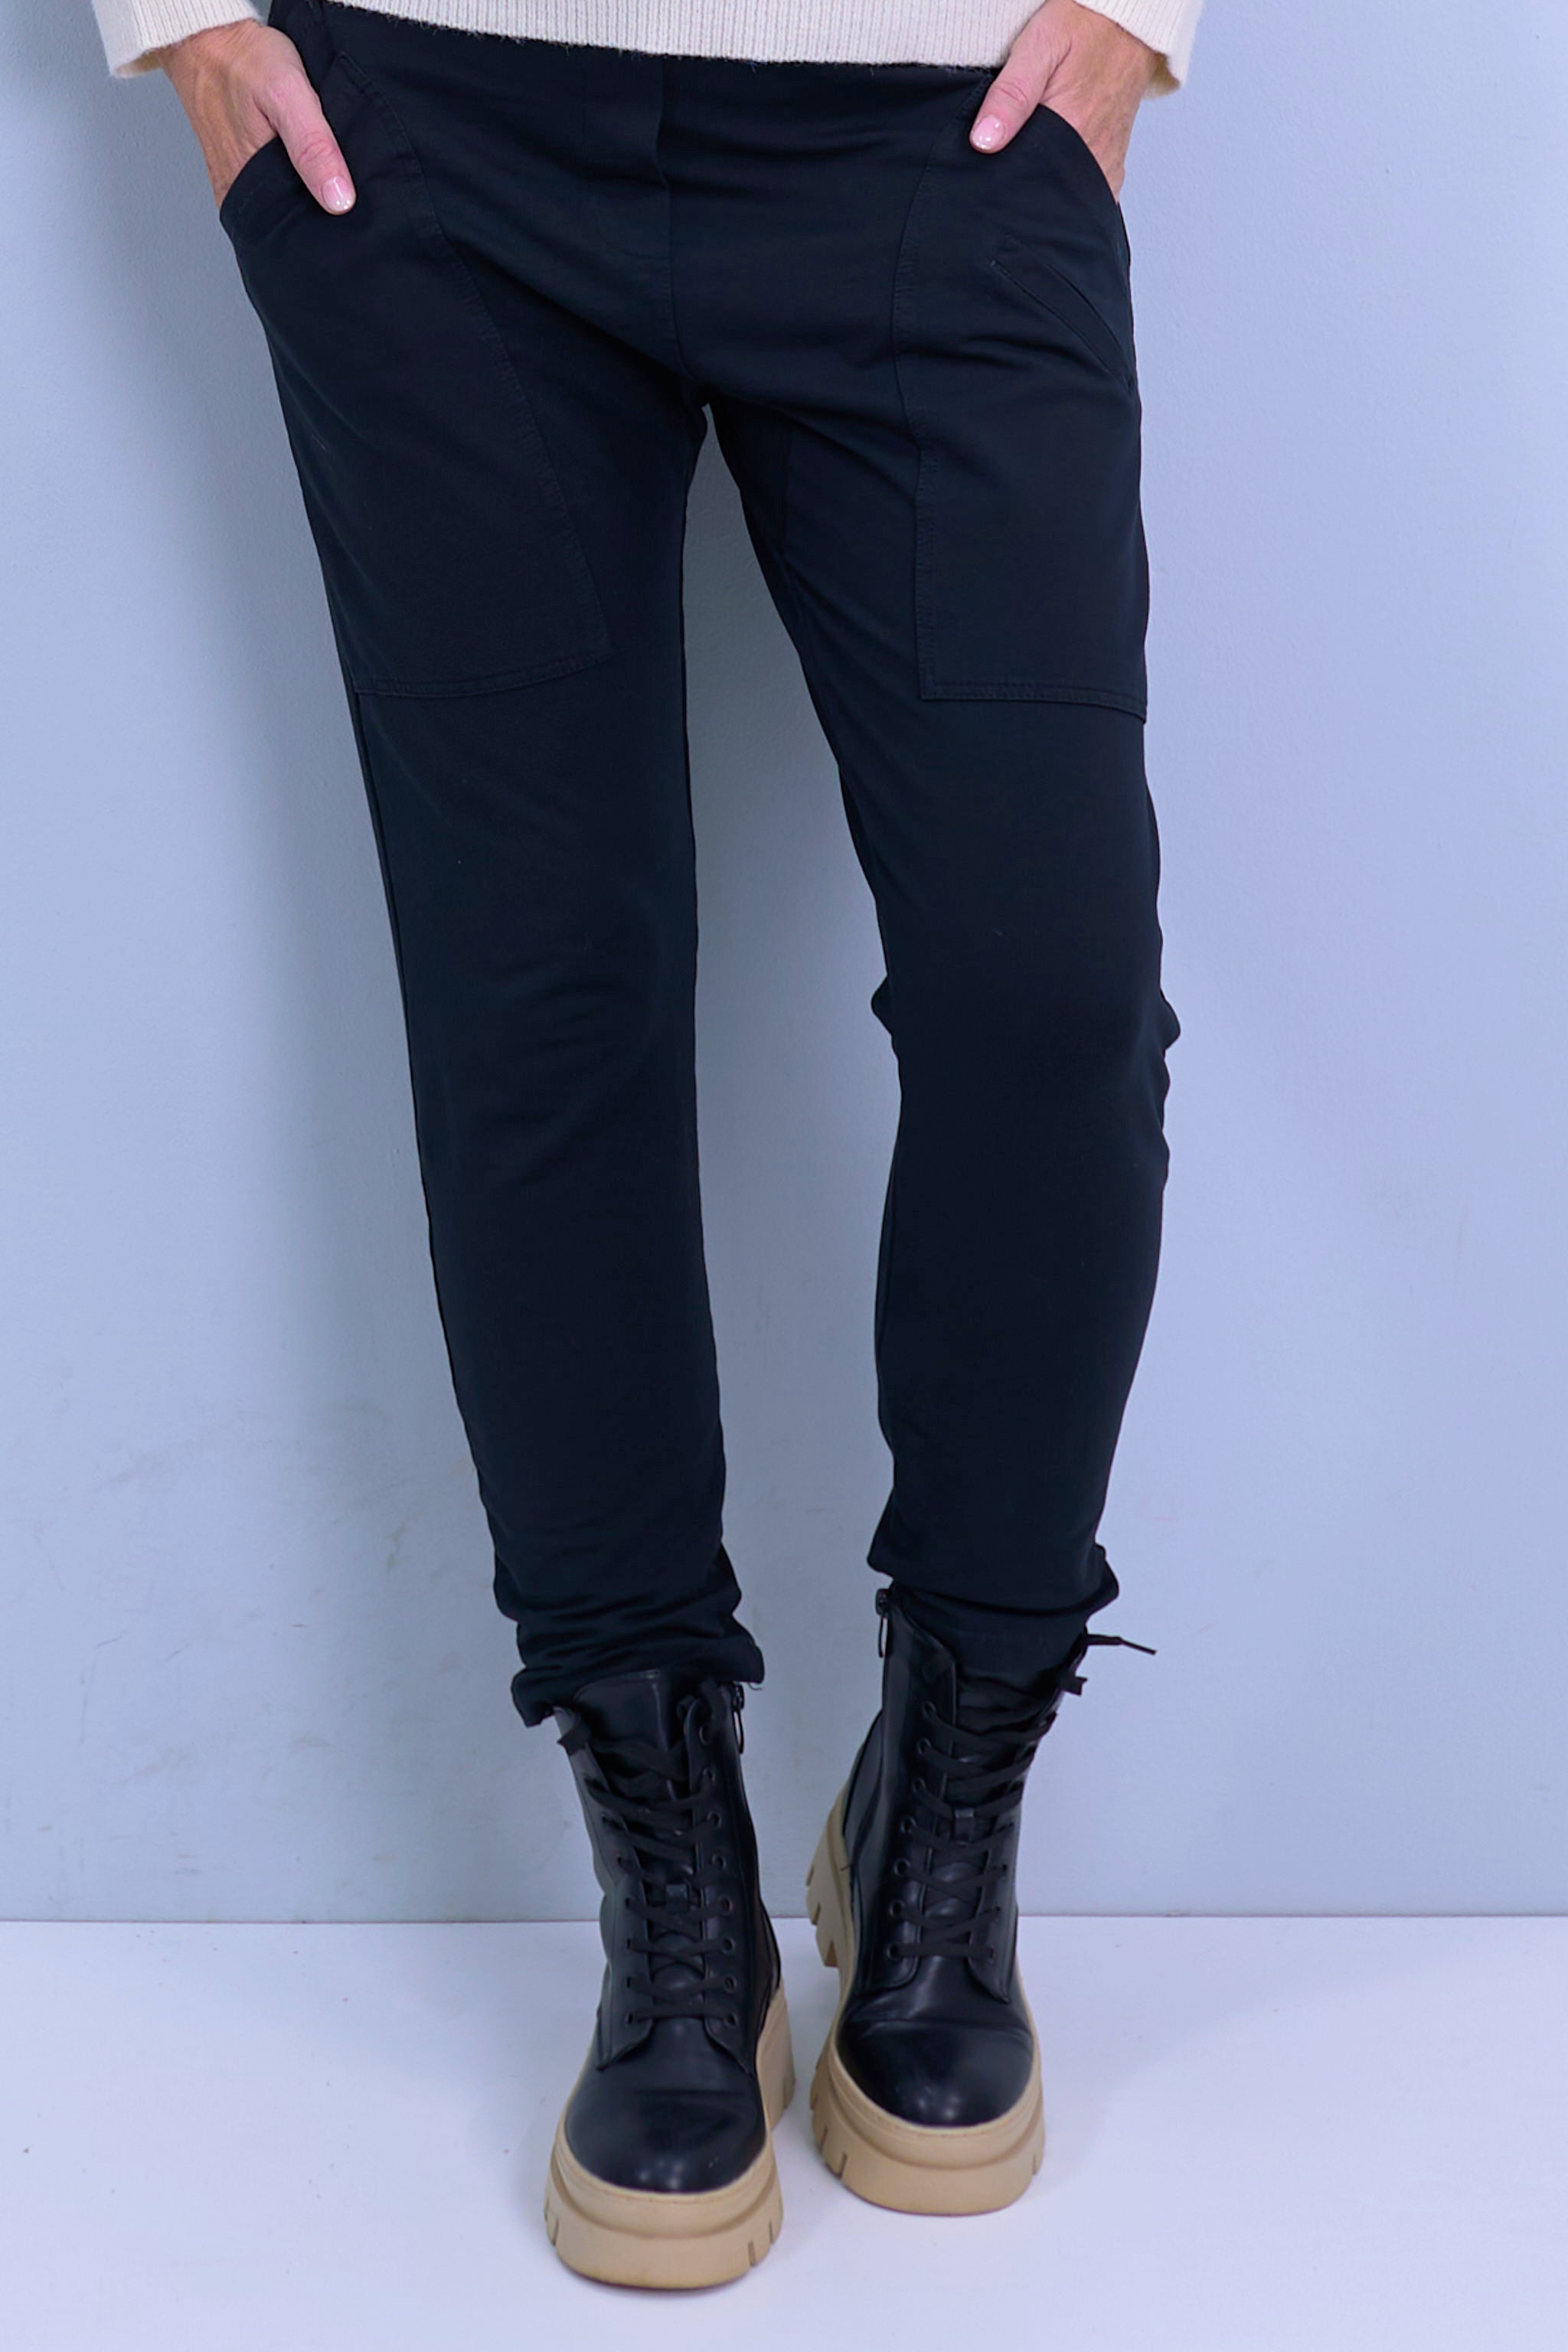 Jog pants with large pockets, black